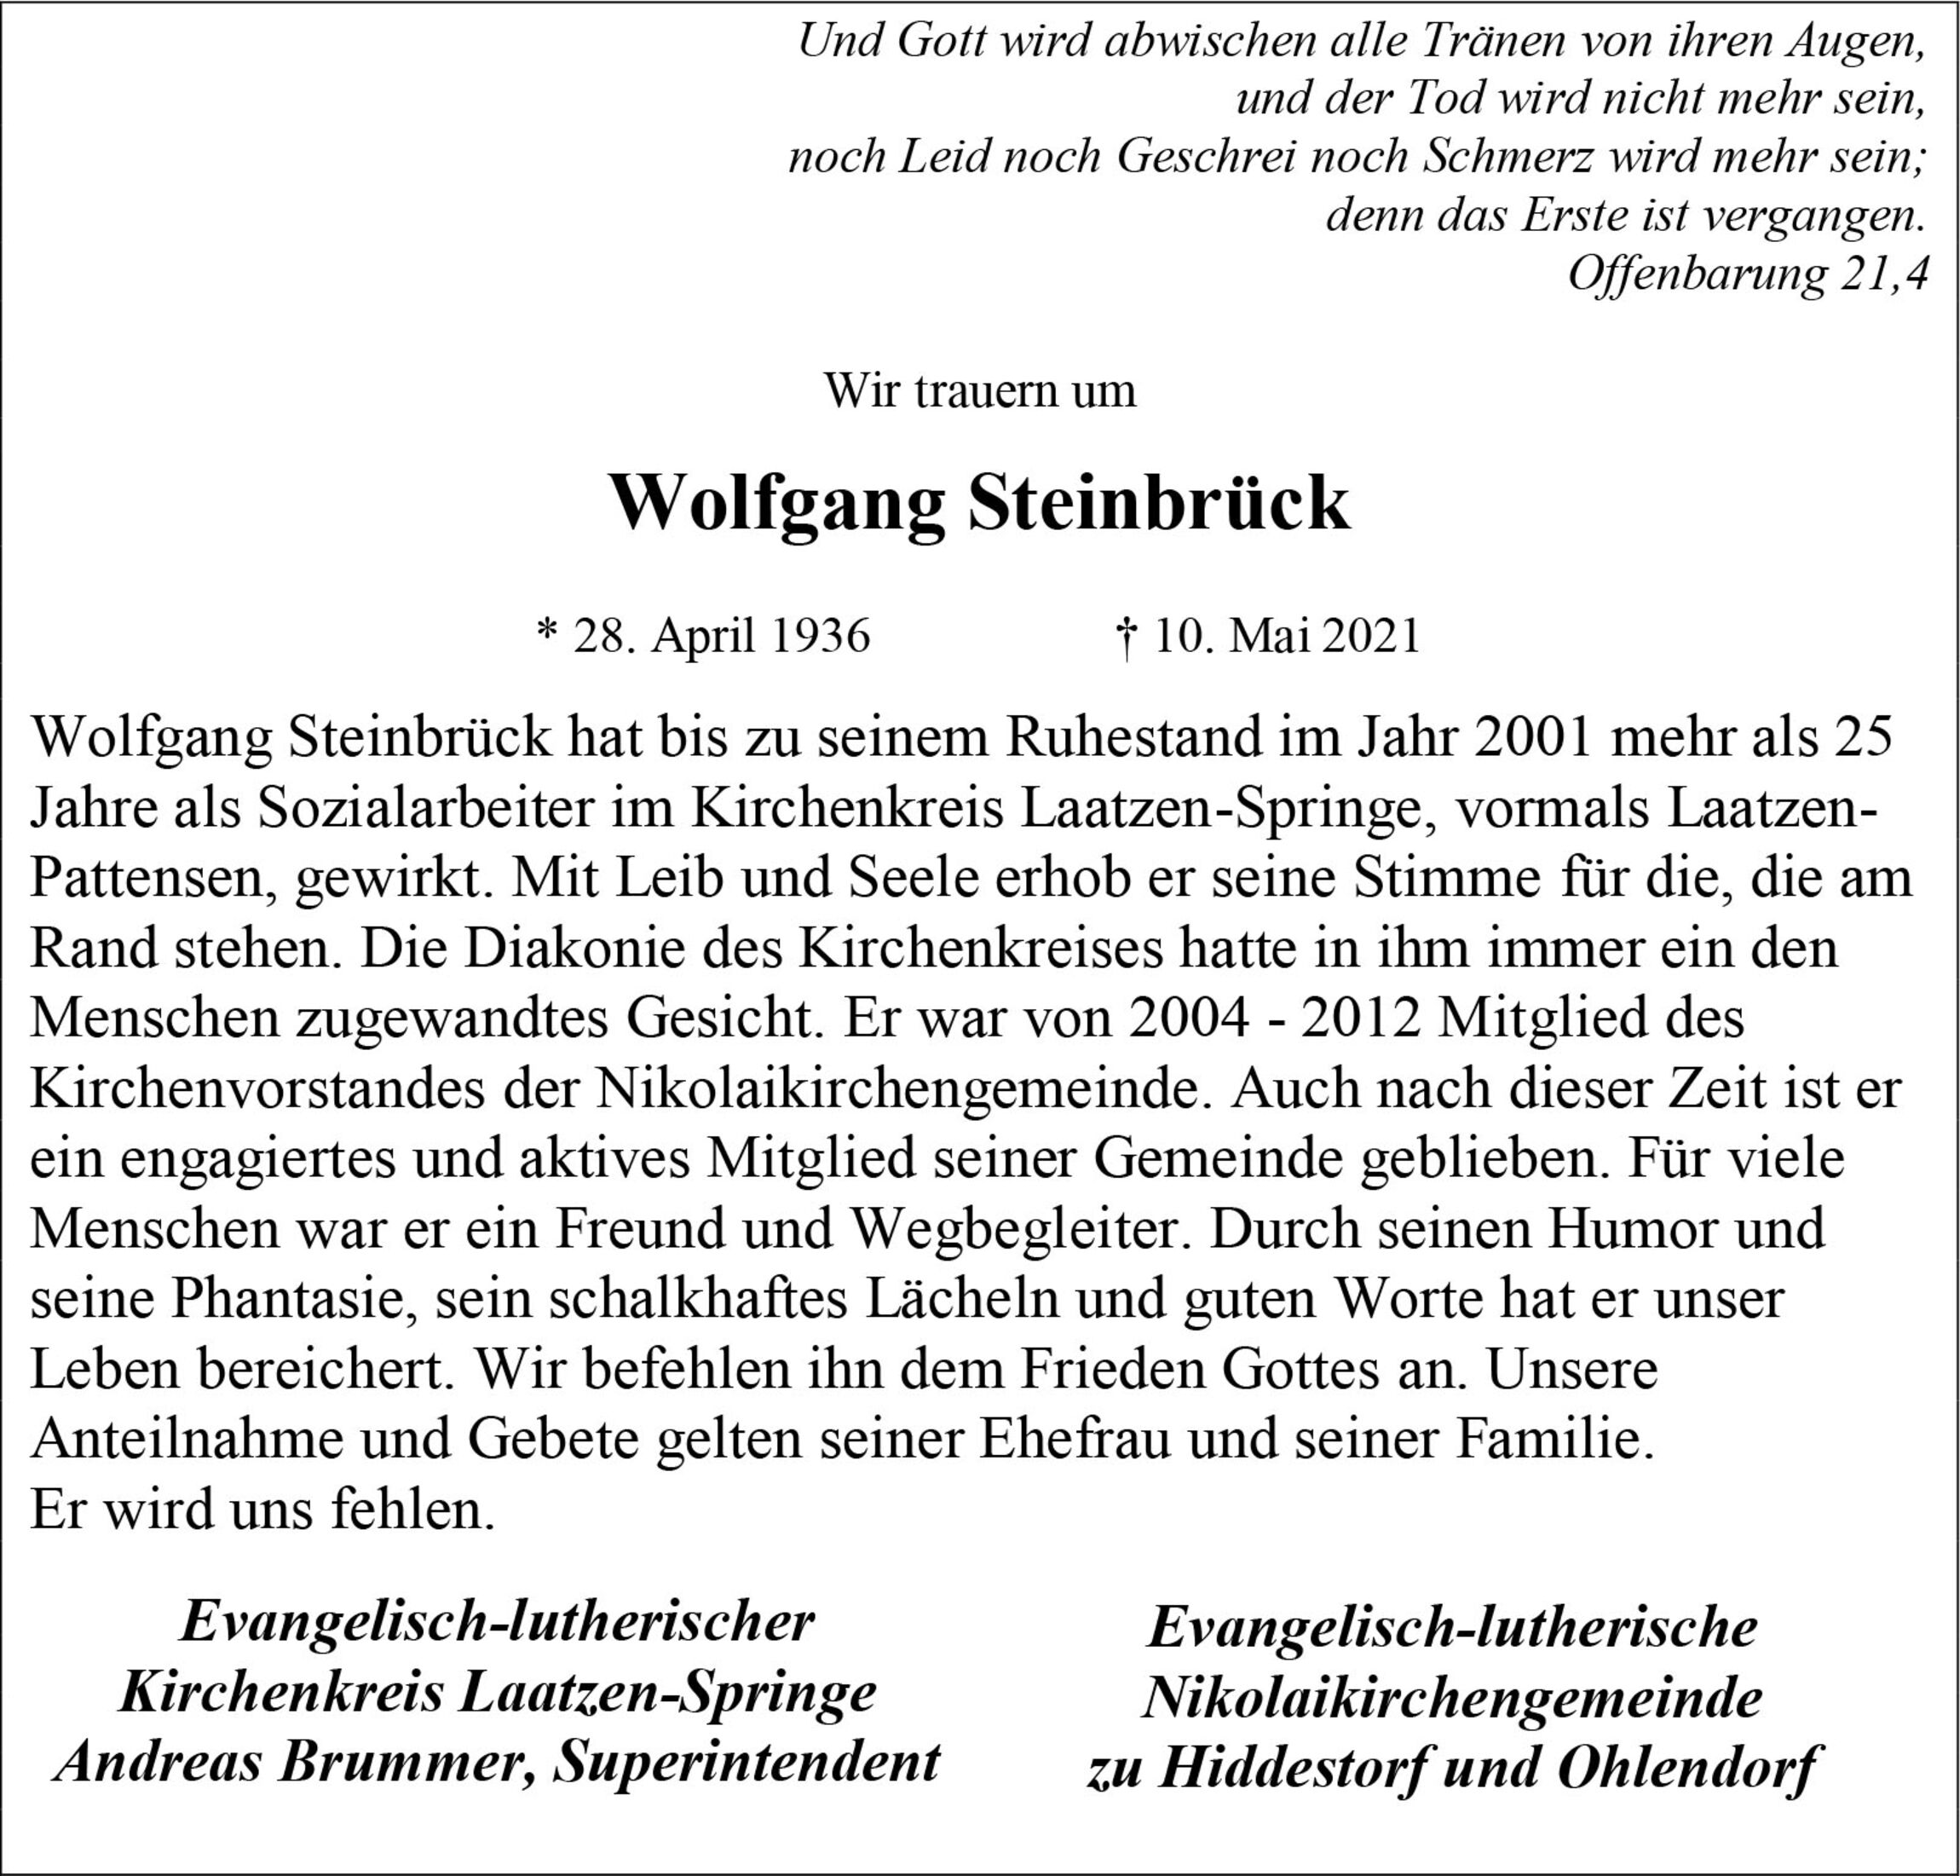 Traueranzeige Wolfgang Steinbrück